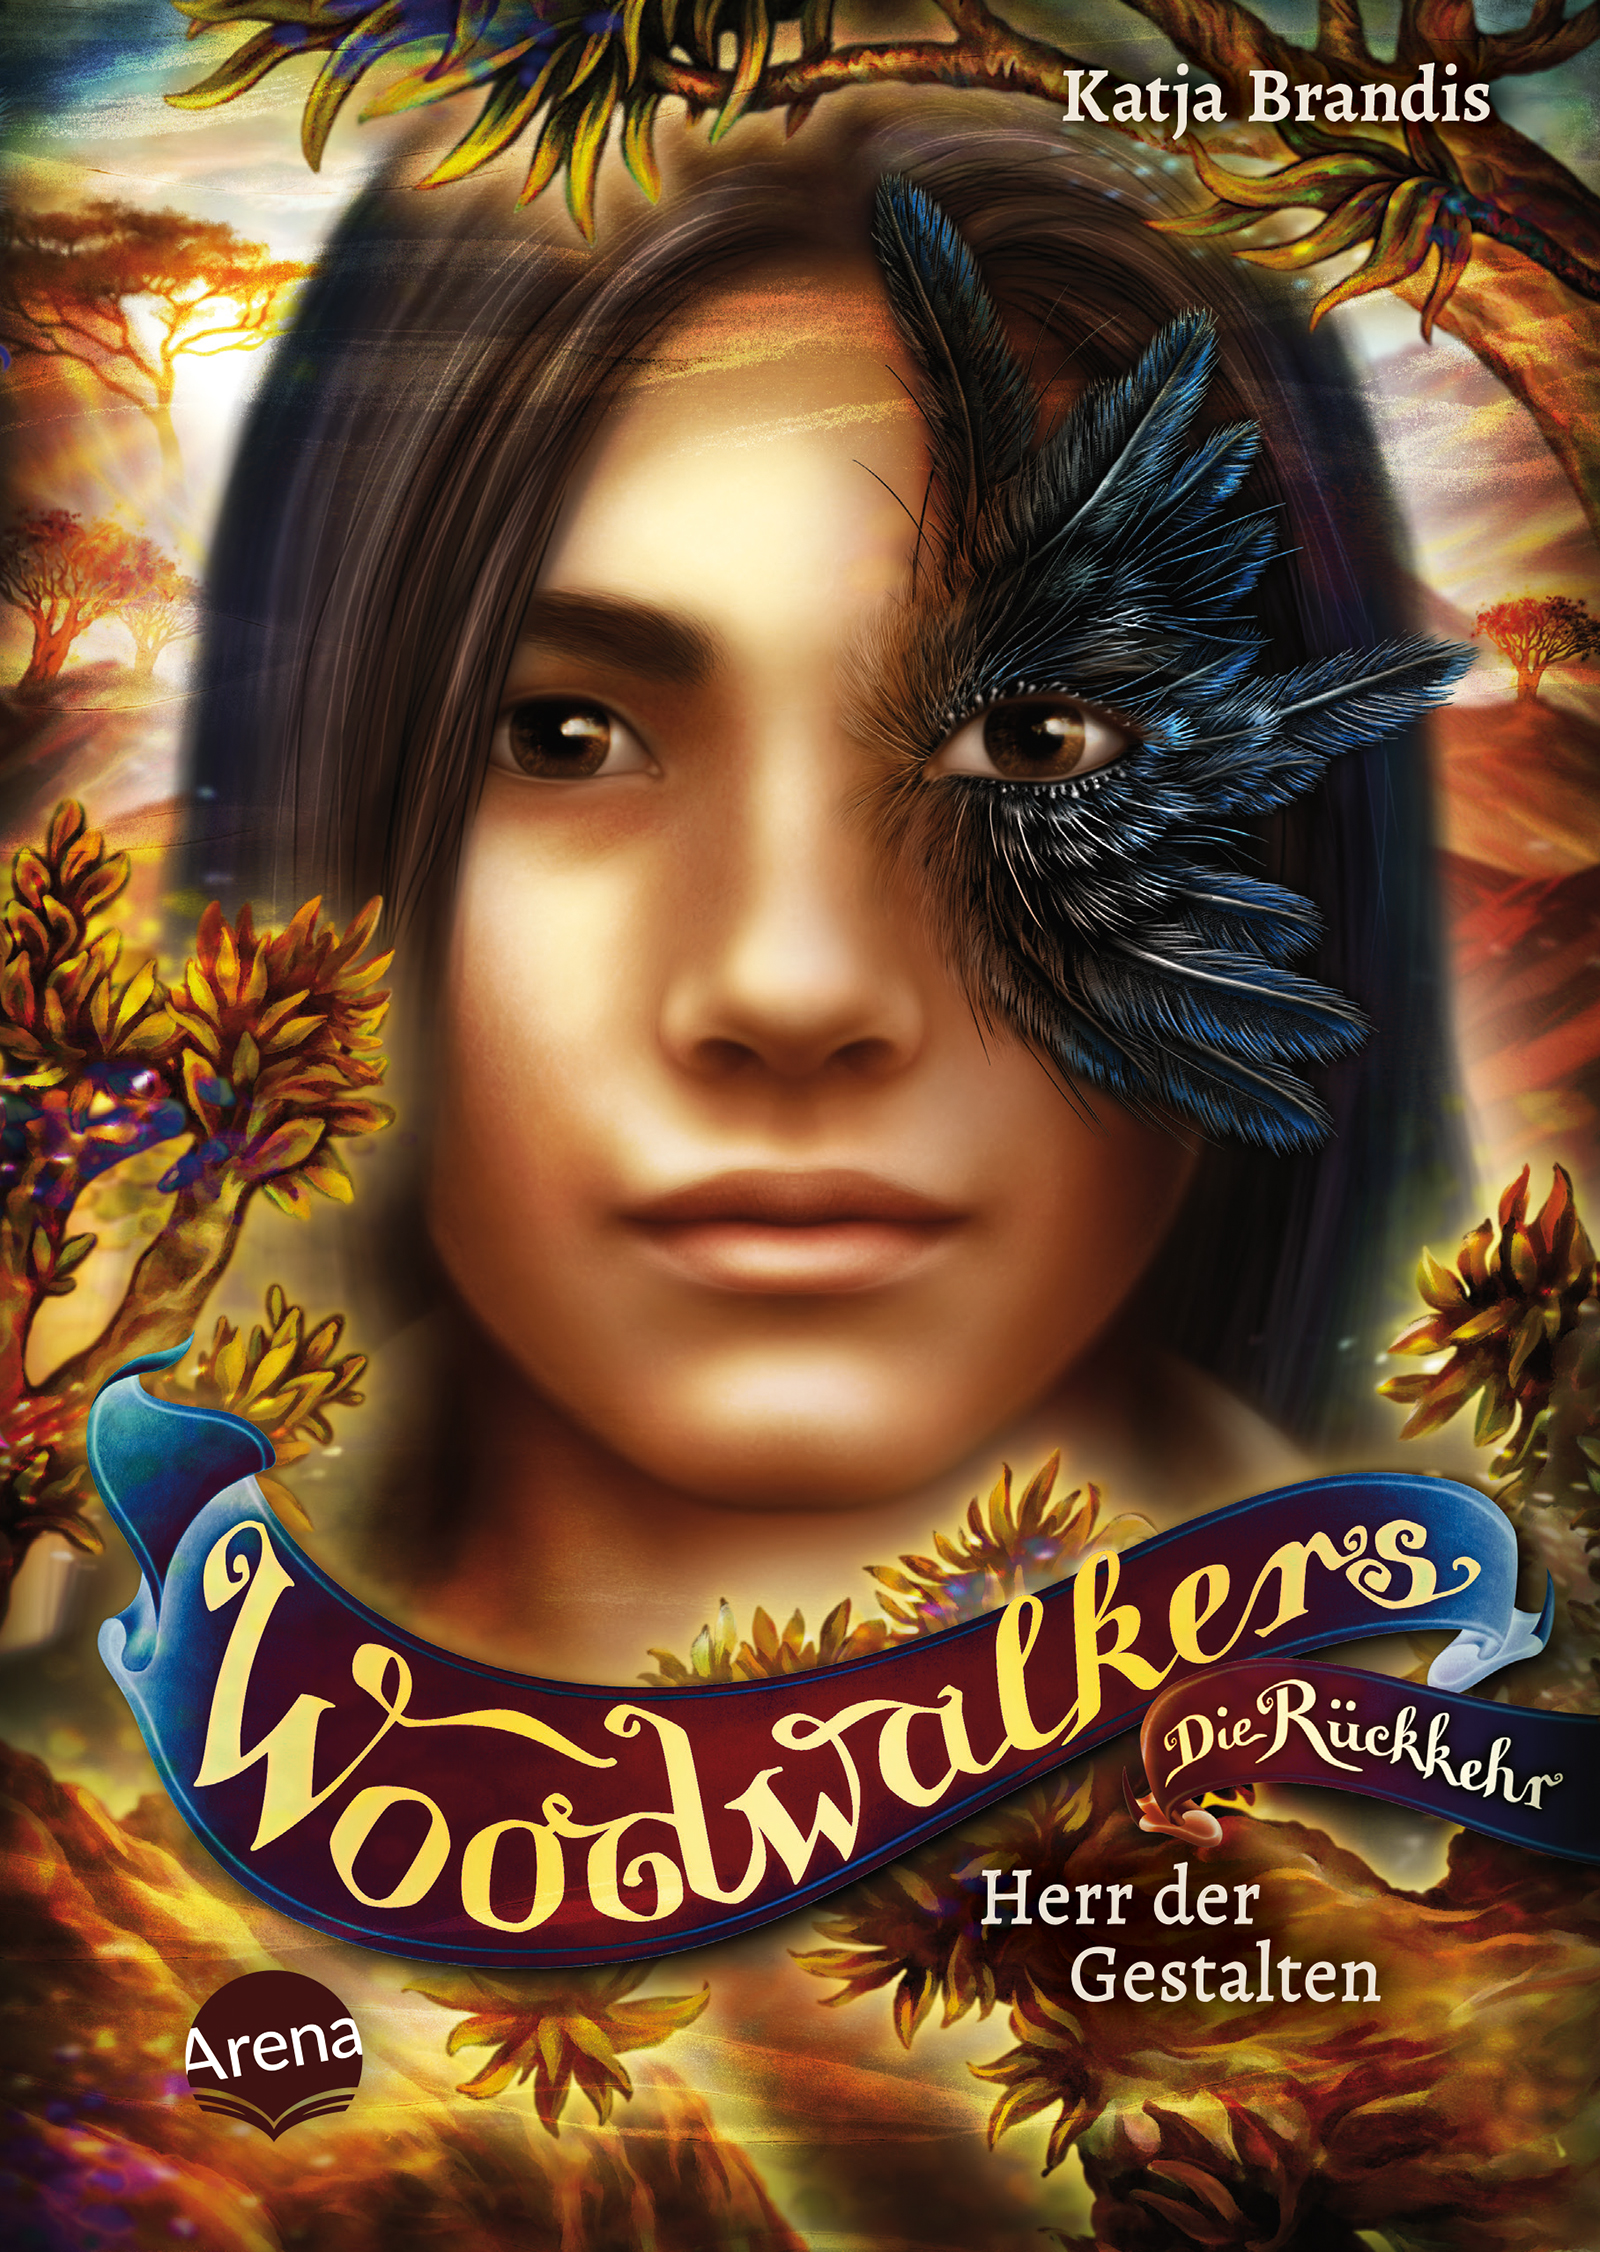 „Woodwalkers – Die Rückkehr (Staffel 2, Band 2). Herr der Gestalten“ von Katja Brandis steigt neu in die SPIEGEL-Bestsellerliste ein